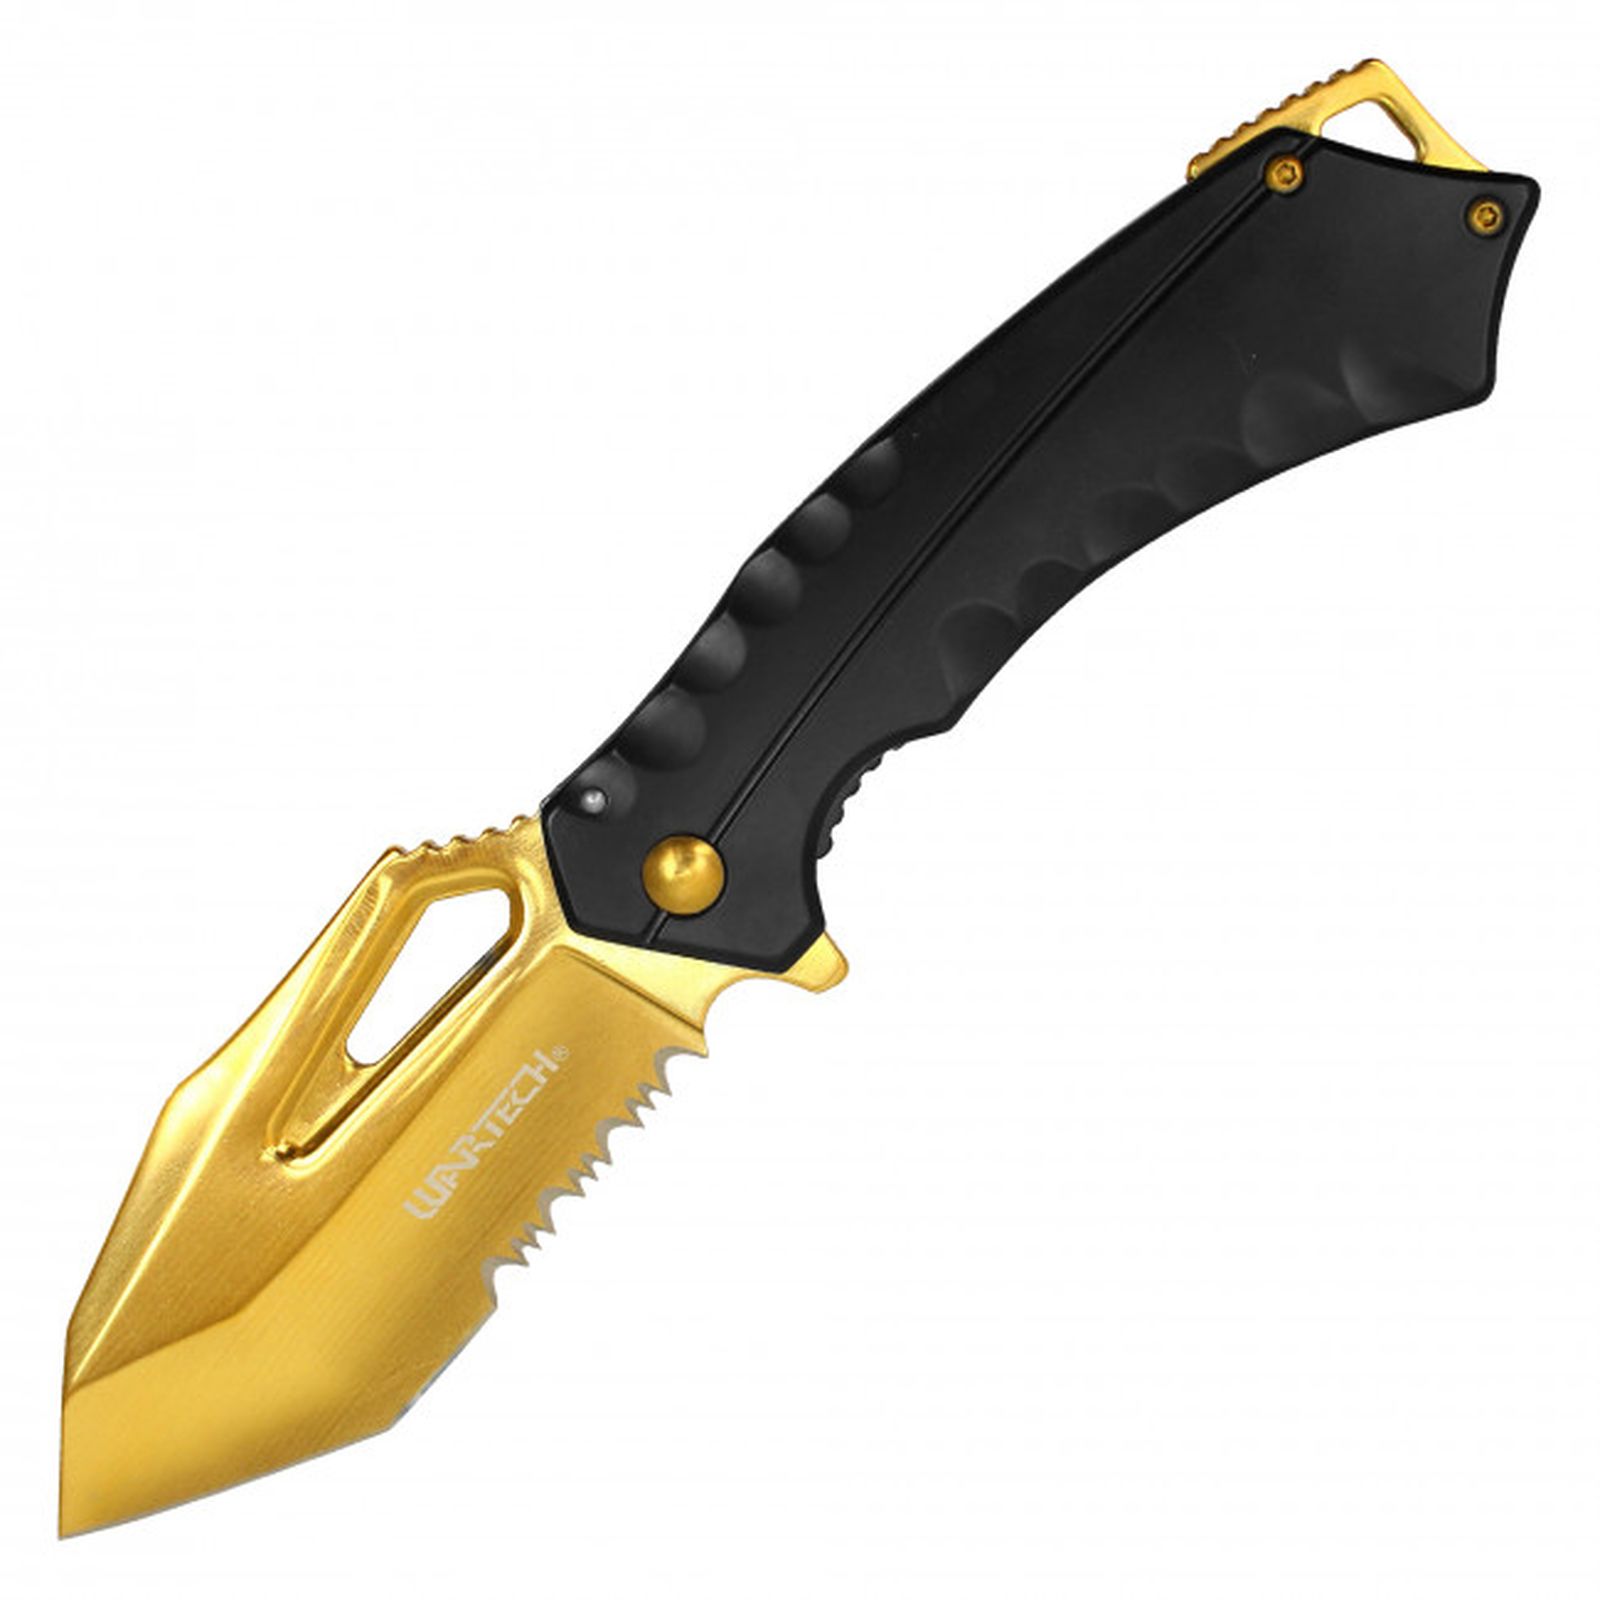 Spring-Assist Folding Knife | 3.5in. Gold Steel Blade Heavy Duty EDC Black